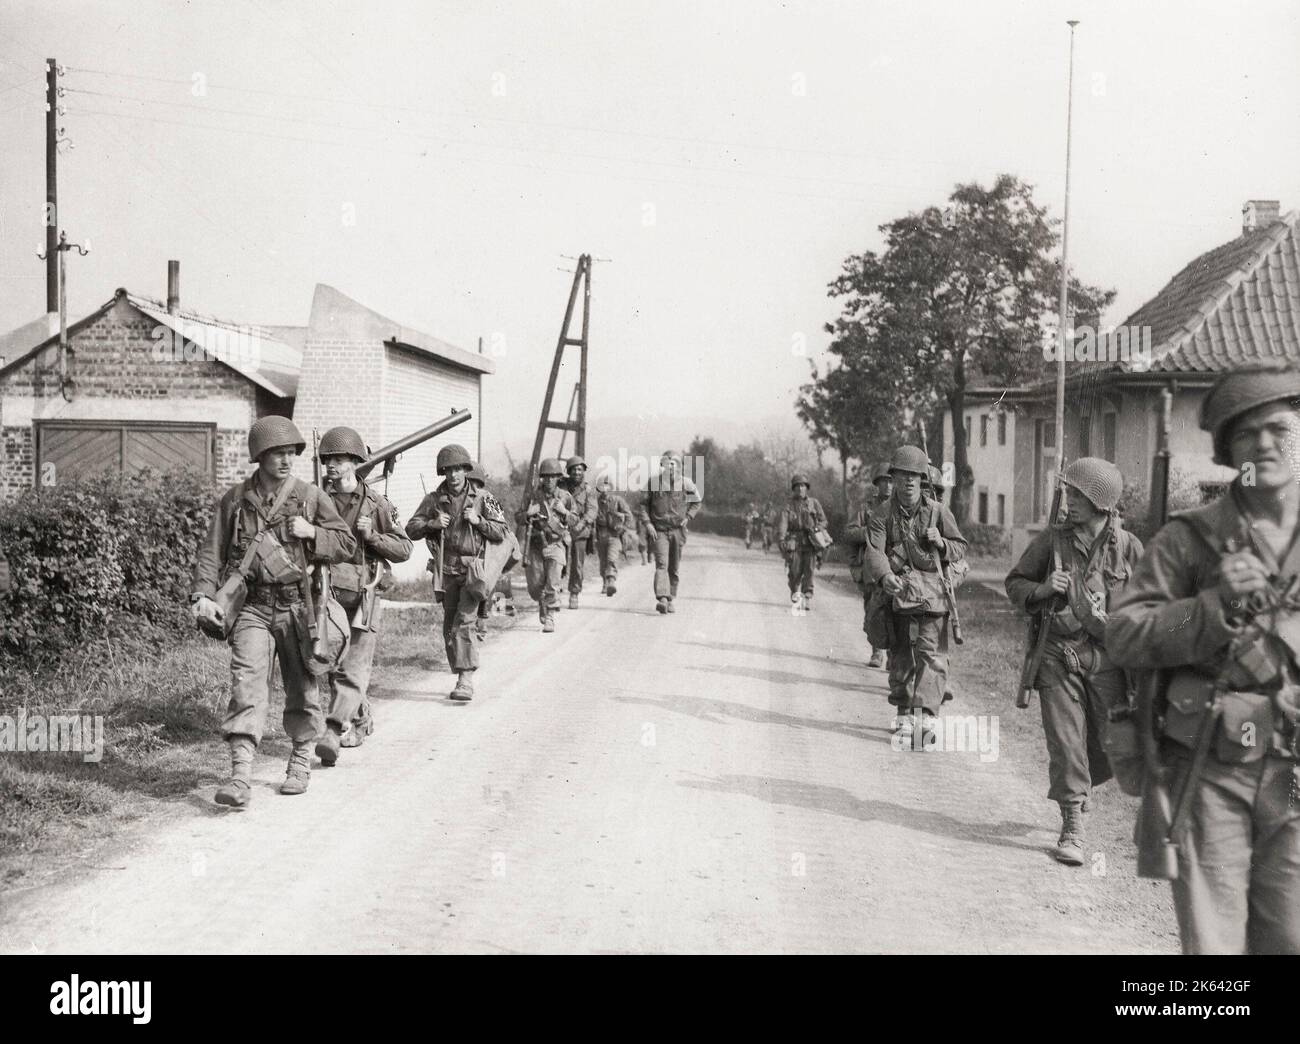 Photographie d'époque de la Seconde Guerre mondiale - ligne Siegfried, frontière belge allemande, troupes se déplaçant vers la bataille d'Aix-la-Chapelle Banque D'Images